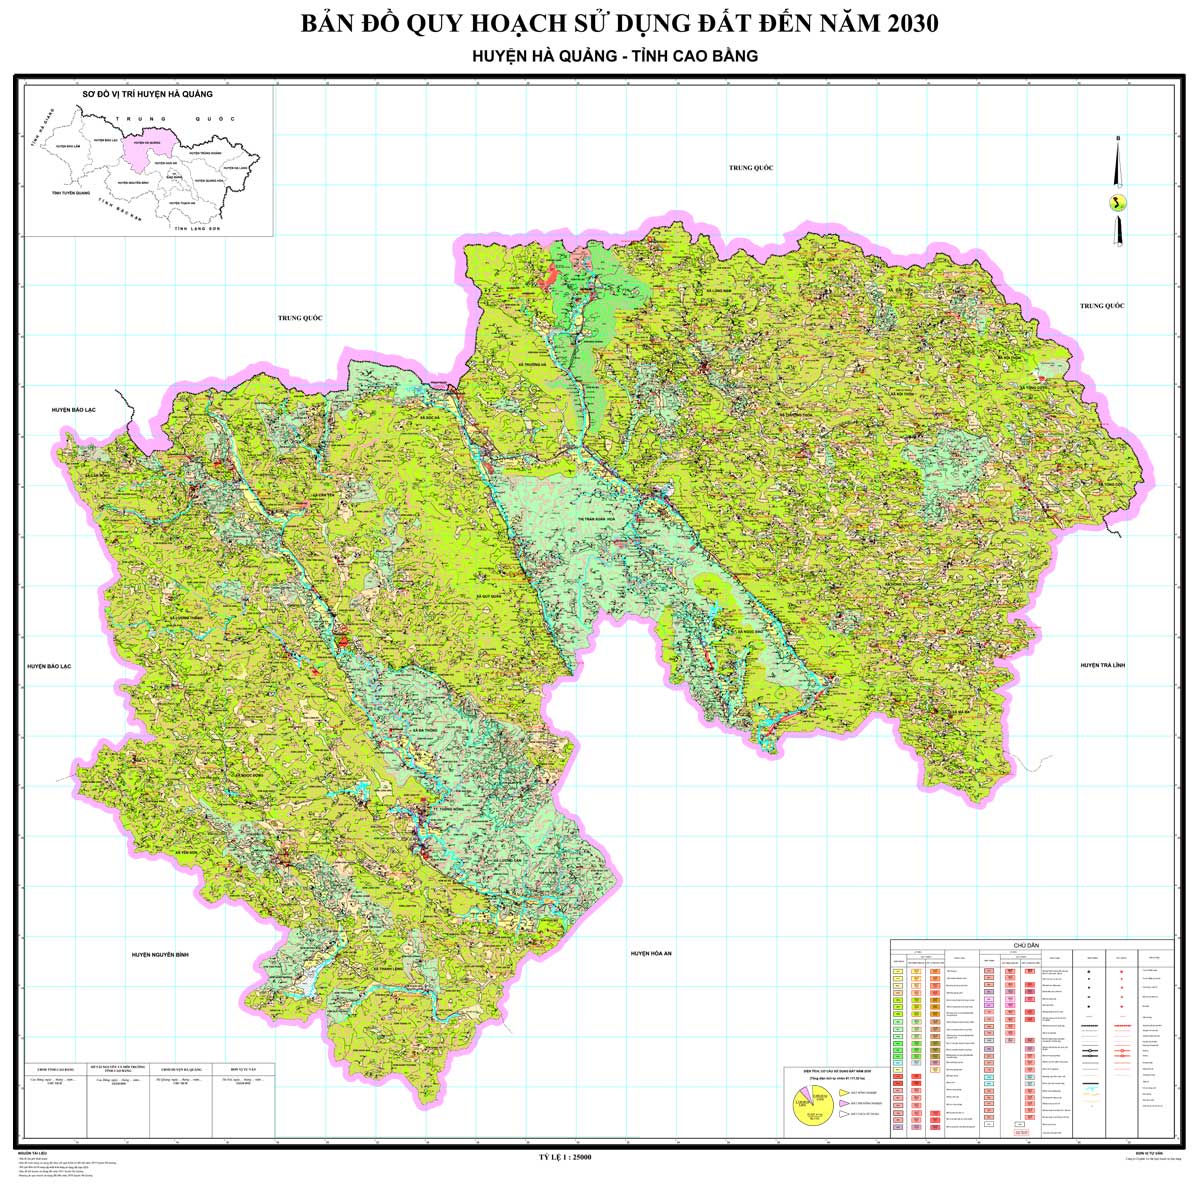 Bản đồ QHSDĐ huyện Hà Quảng đến năm 2030